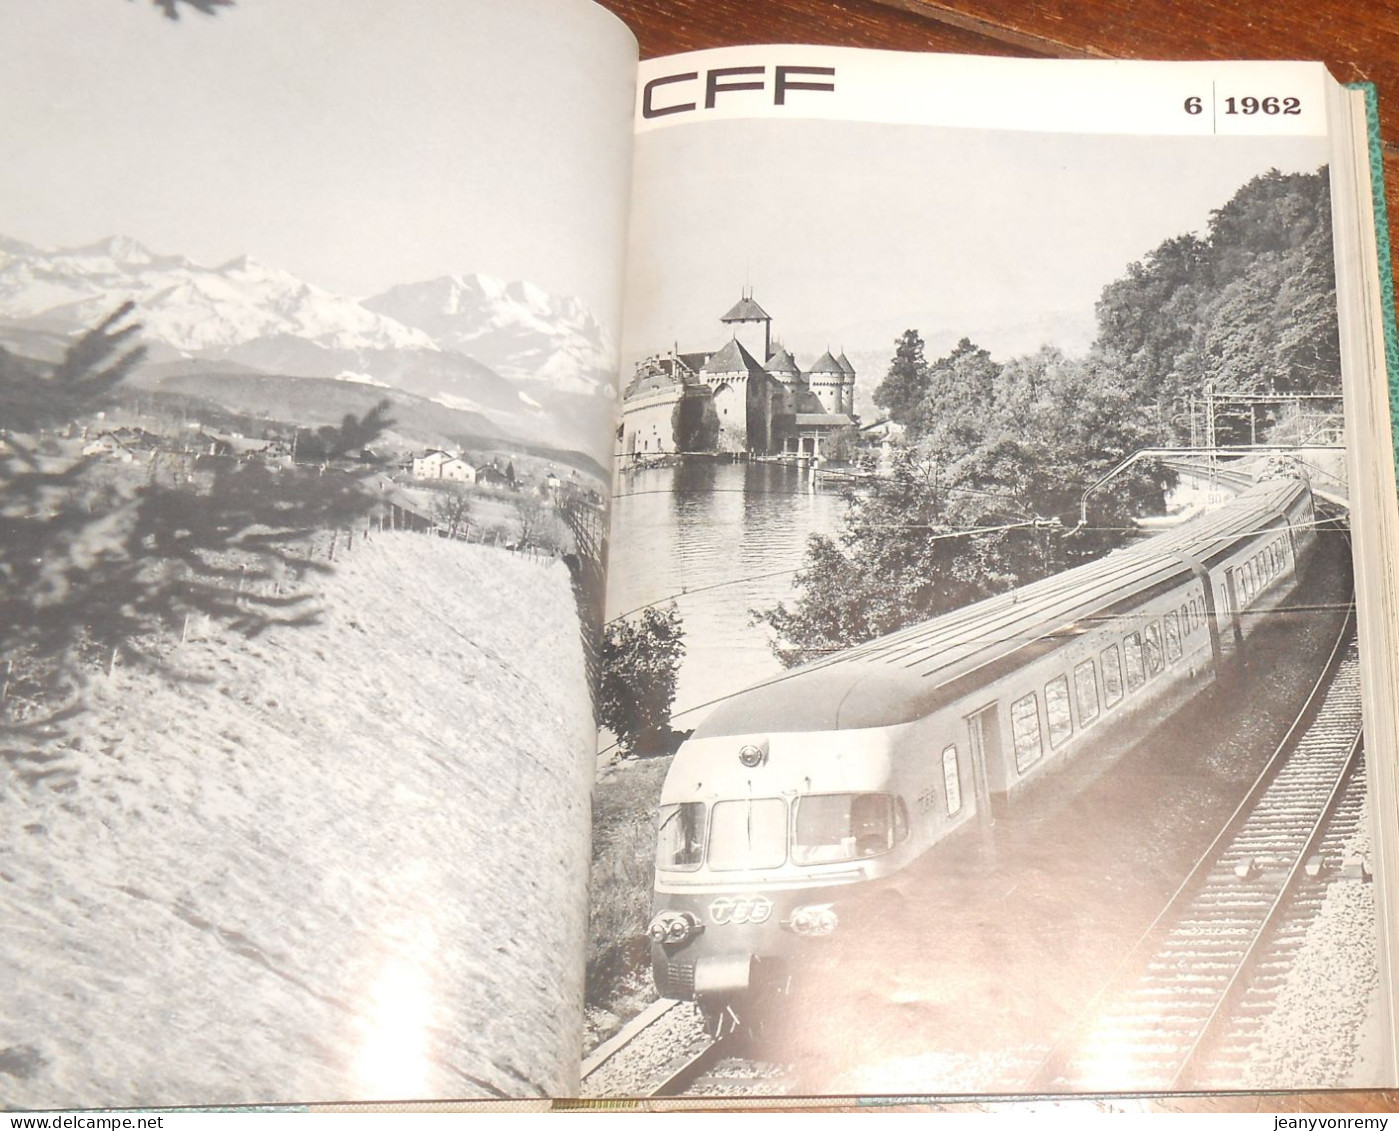 CFF. 23 revues reliées.1/1962 à 11/1963.